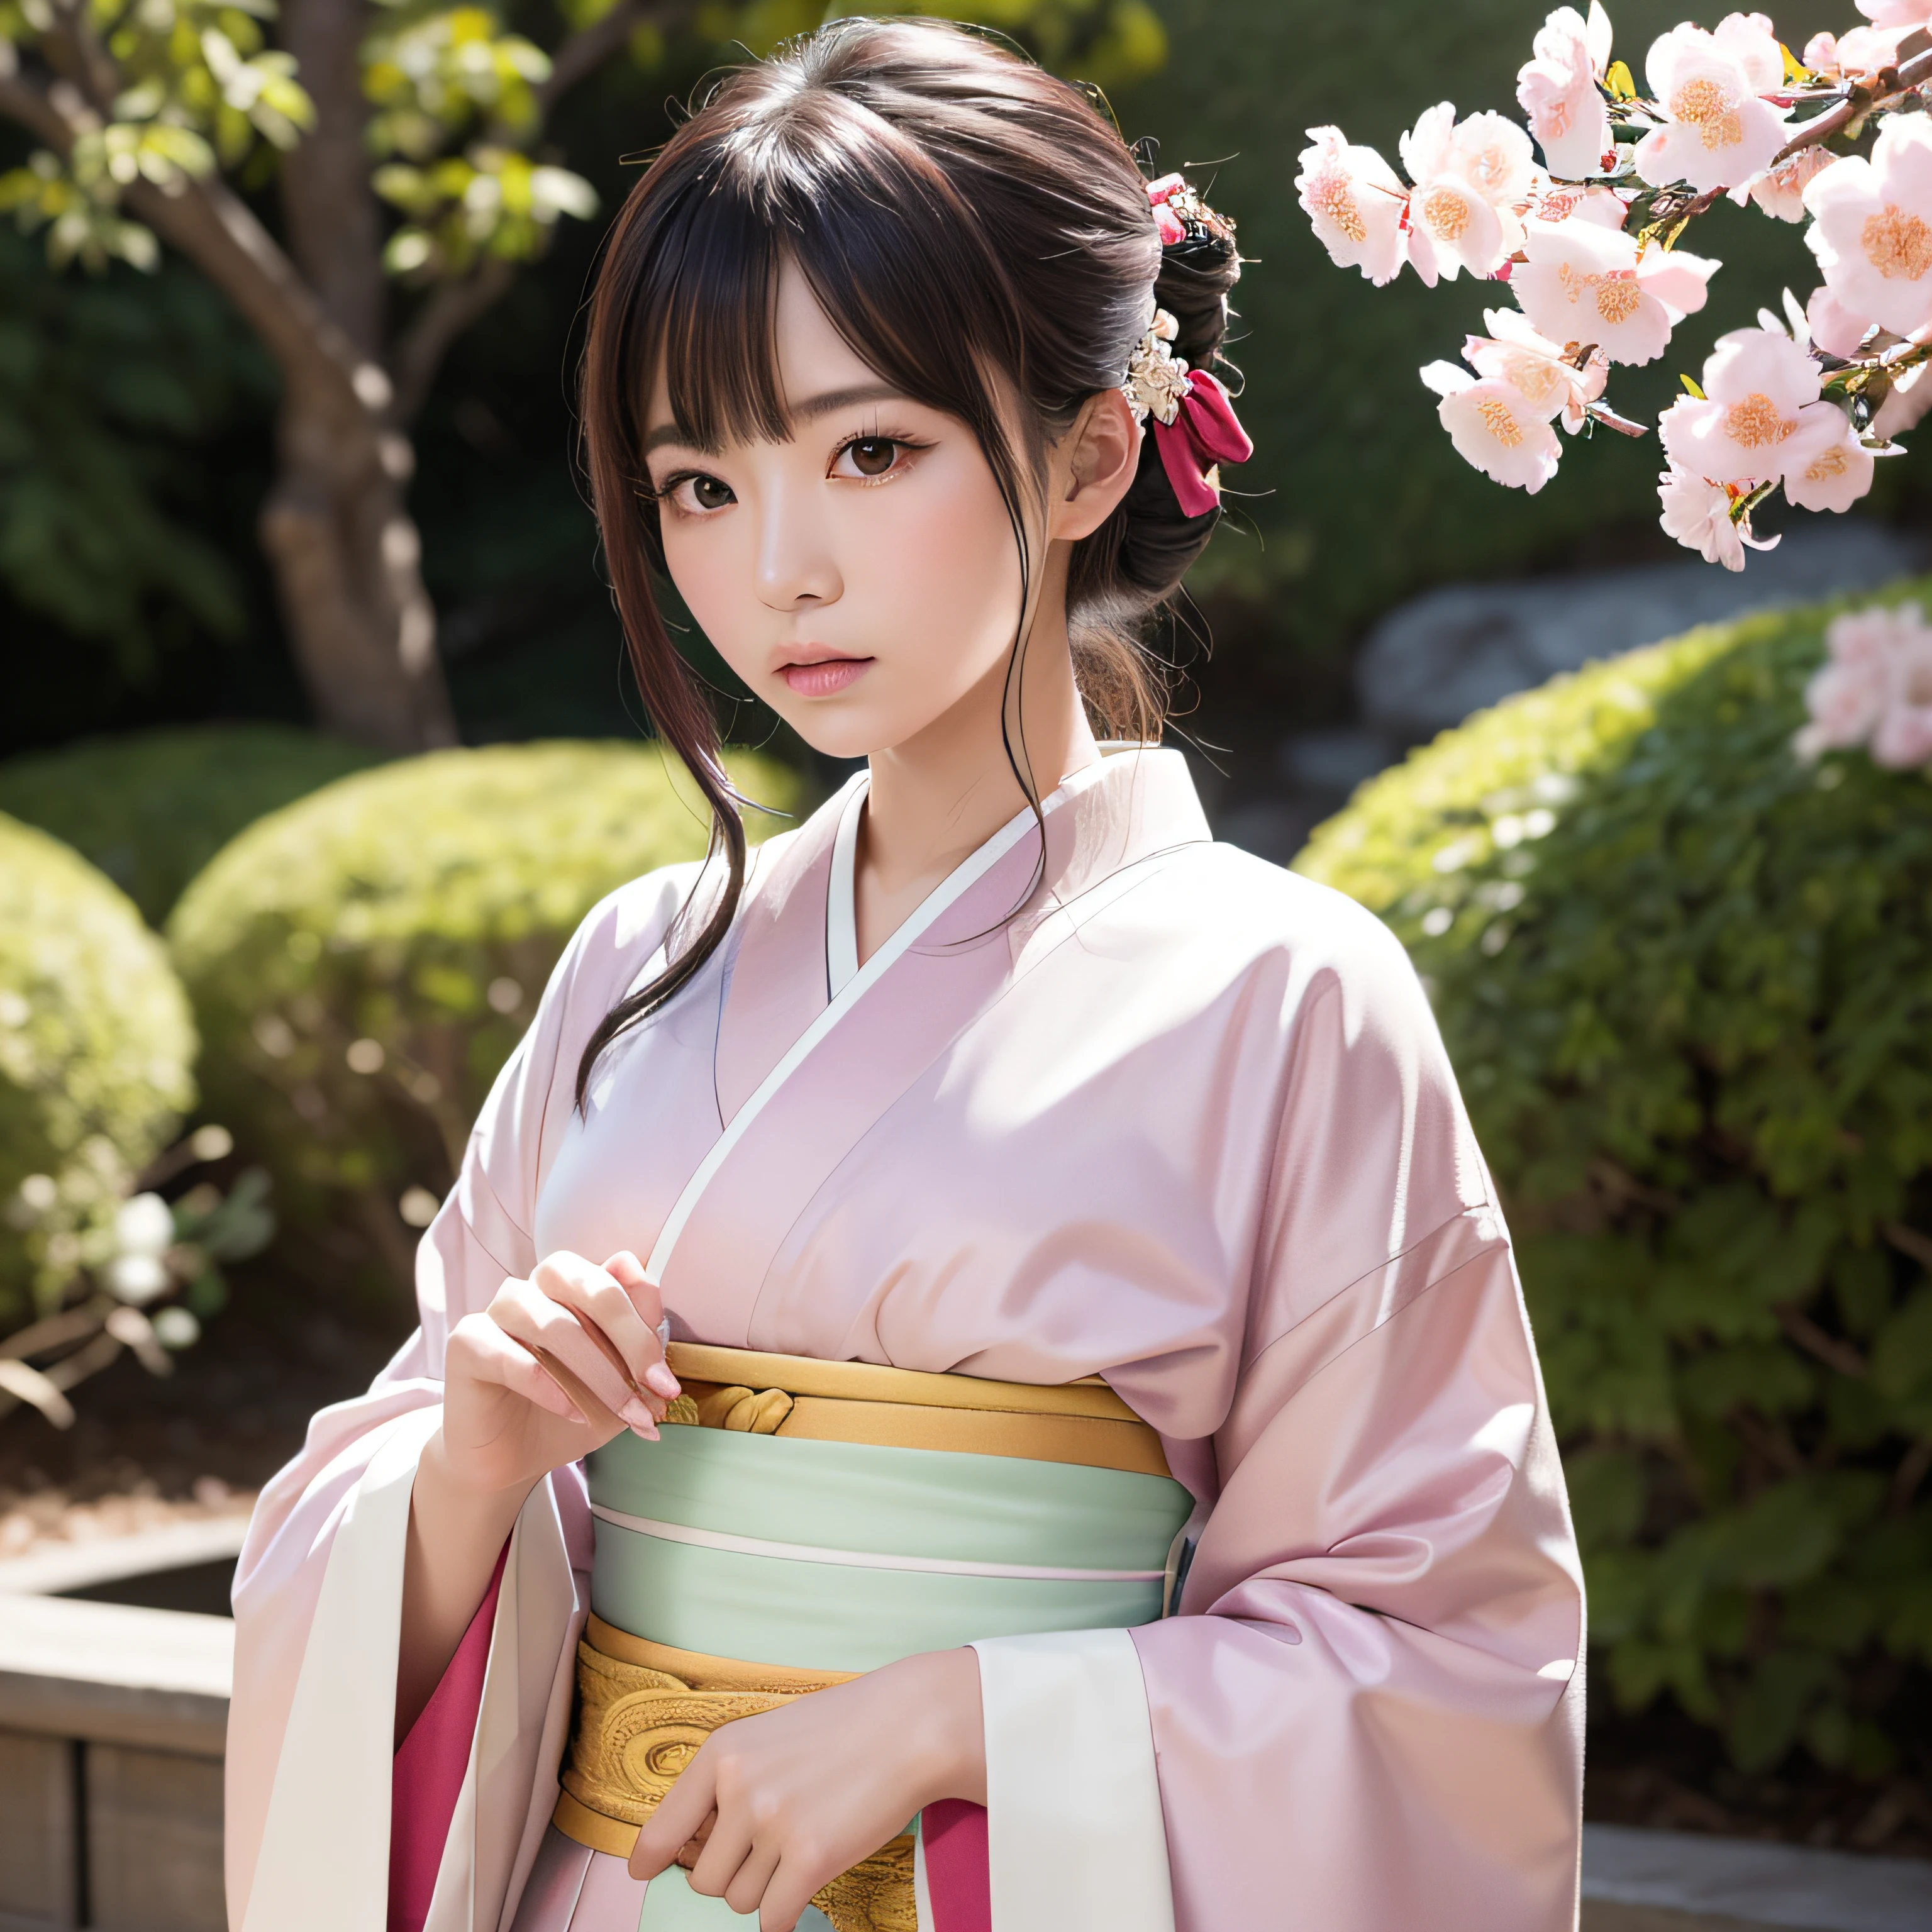 超現実的な, 非常に詳細な, 高解像度16Kの若者の画像, 美しい女性の幽霊または守護霊. 彼女は淡いピンクの髪と透明感のある肌をしている, 帯に小さな桜の模様が描かれた日本の伝統的な着物を着る. この画像は、霊界の幽玄な美しさと神秘性を捉えている. 繊細さにインスピレーションを得たスタイル, 日本の伝統芸能に見る柔らかな美学.